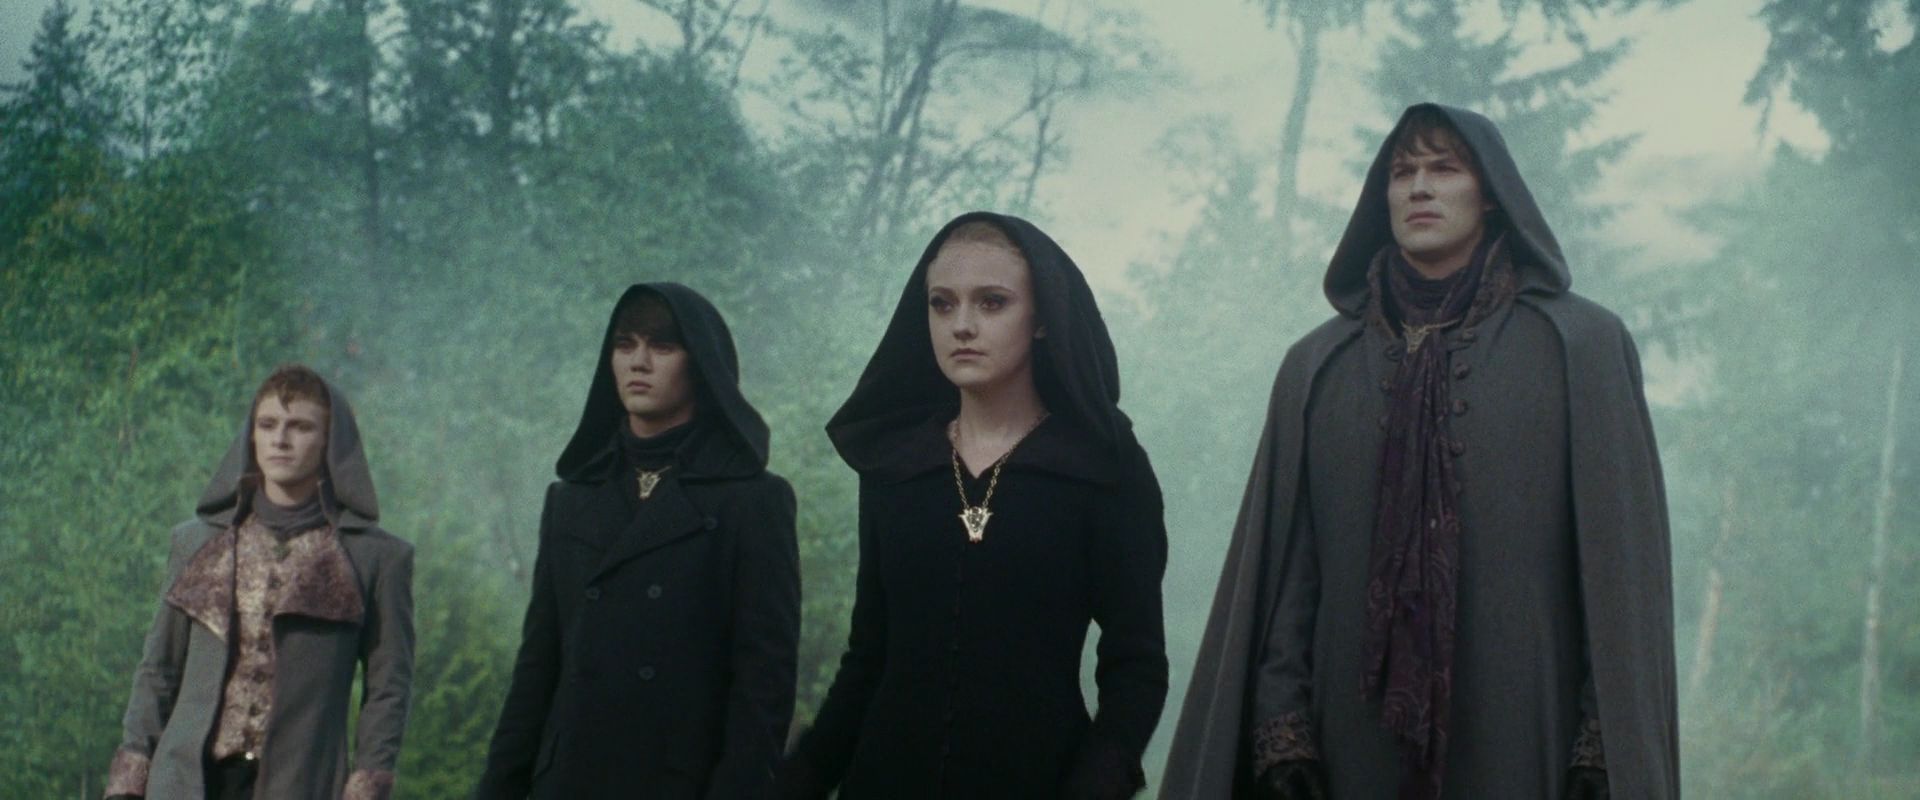 The Volturi Image: Eclipse Movie Bluray HQ.